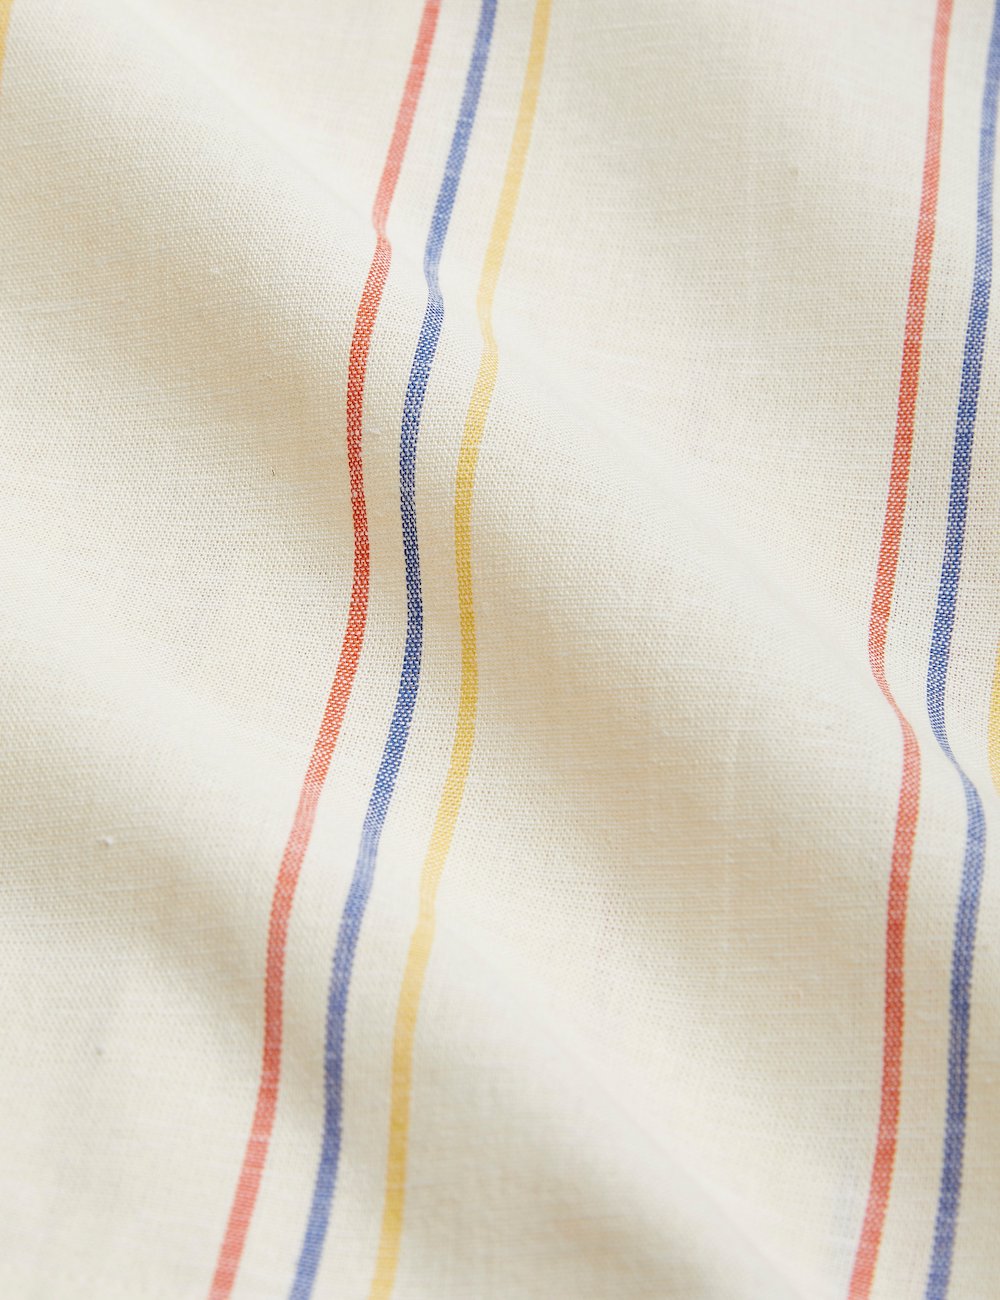 Mini Rodini Stripe Woven Shorts - Off White